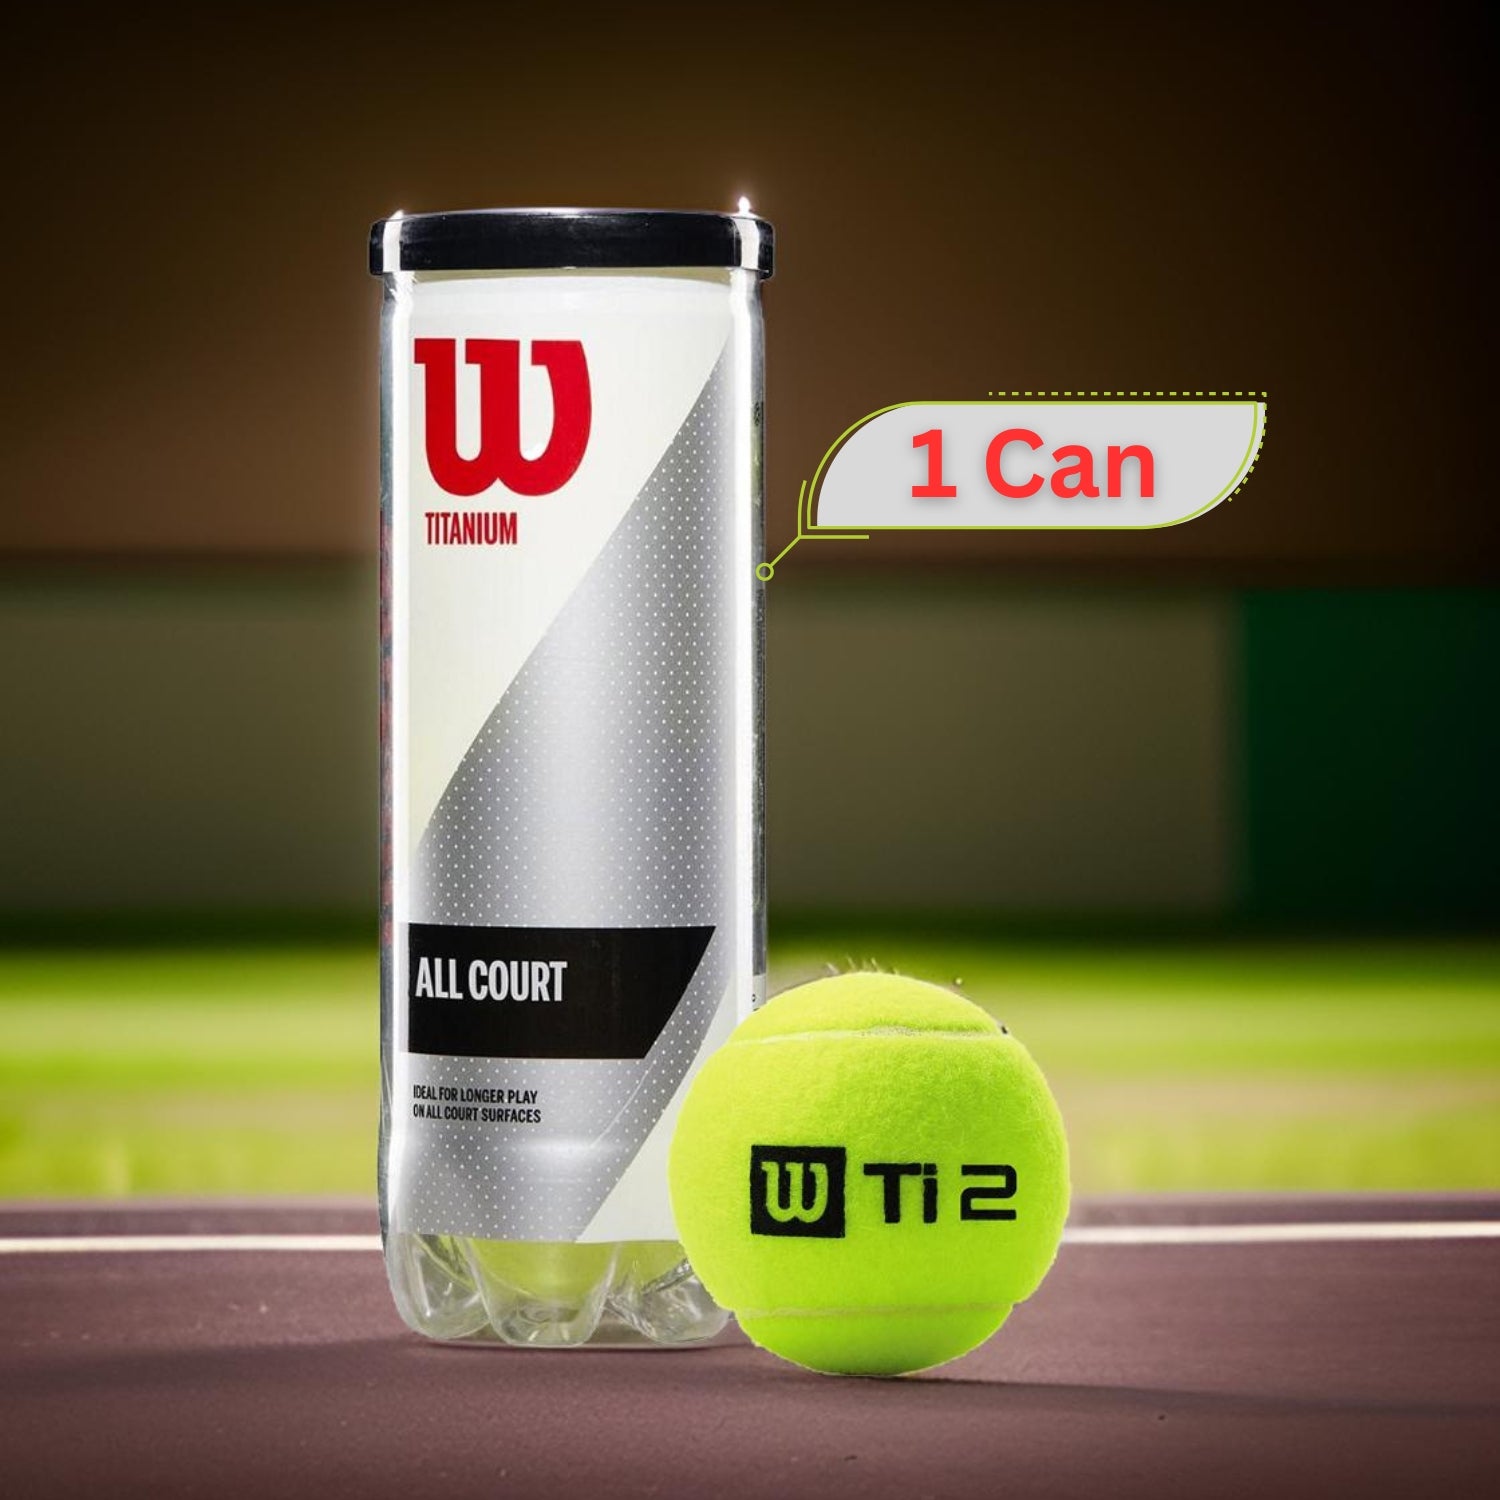 Wilson Titanium All Court Tennis Balls Can (1 Can) - Best Price online Prokicksports.com